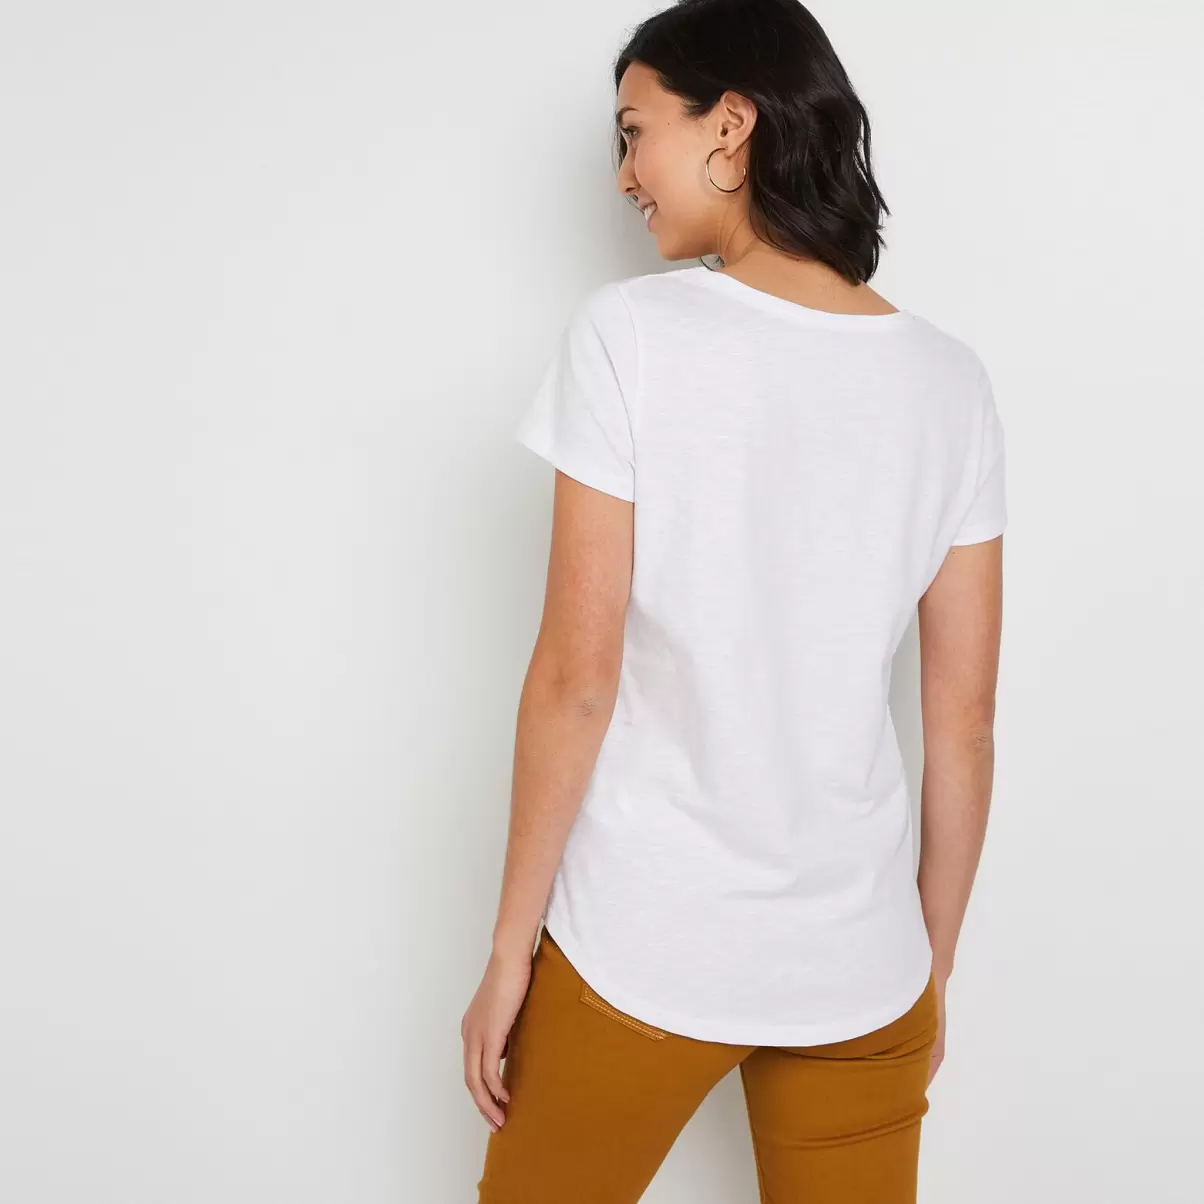 Blanc T-Shirt Manches Courtes V Femme Femme Grain De Malic Collection T-Shirts & Tops - 1